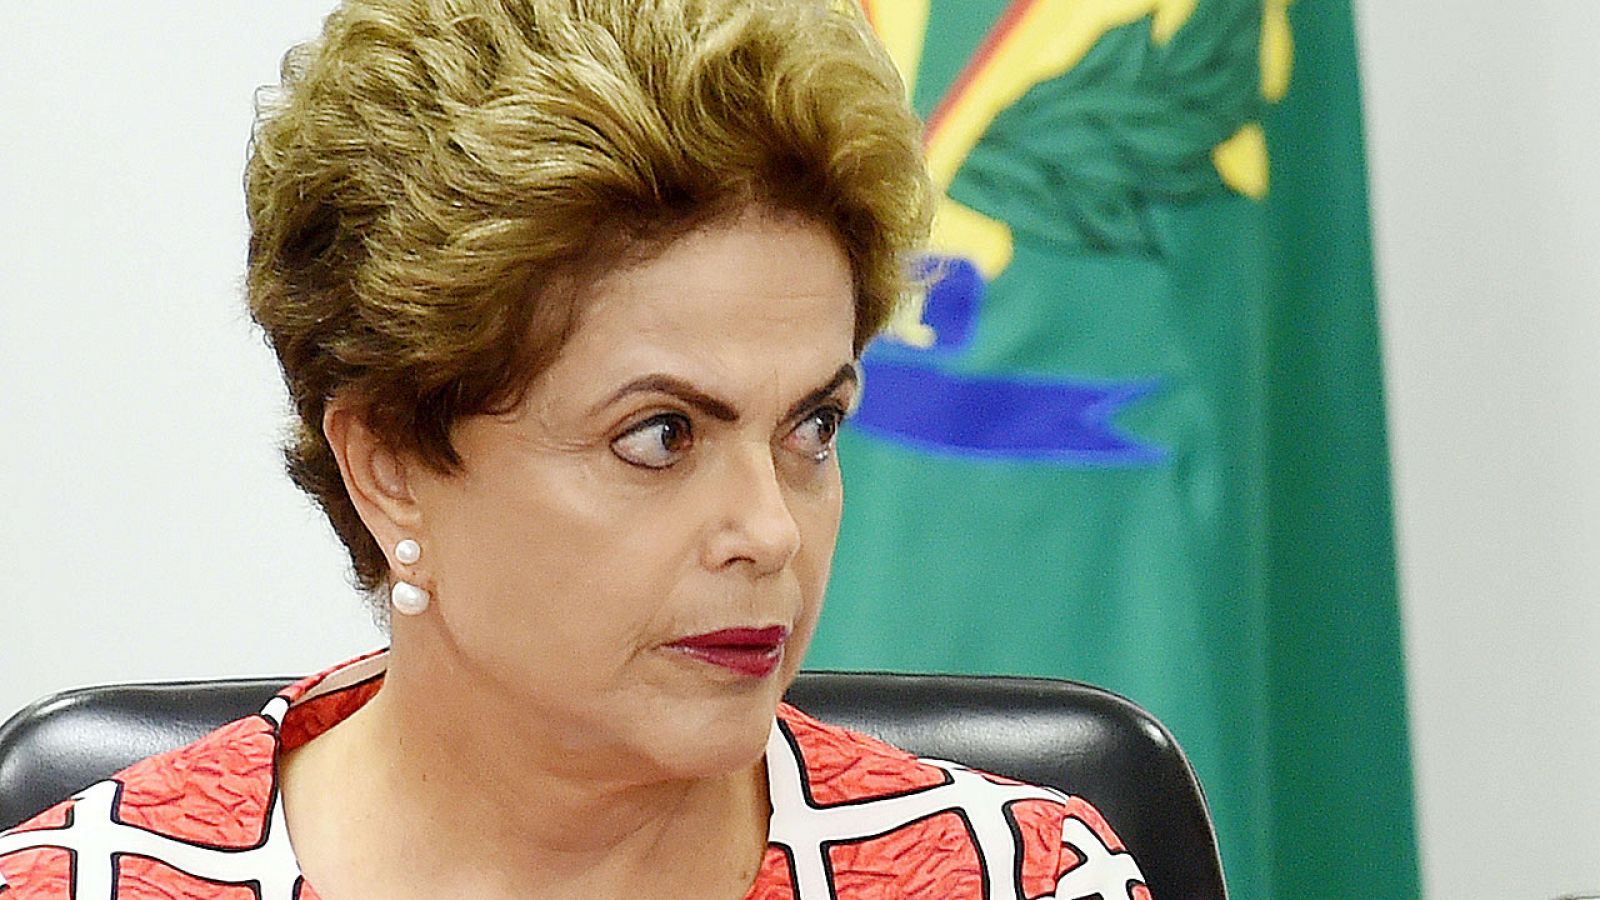 La presidenta brasileña, Dilma Rousseff, se enfrenta a un juicio político por irregularidades fiscales.